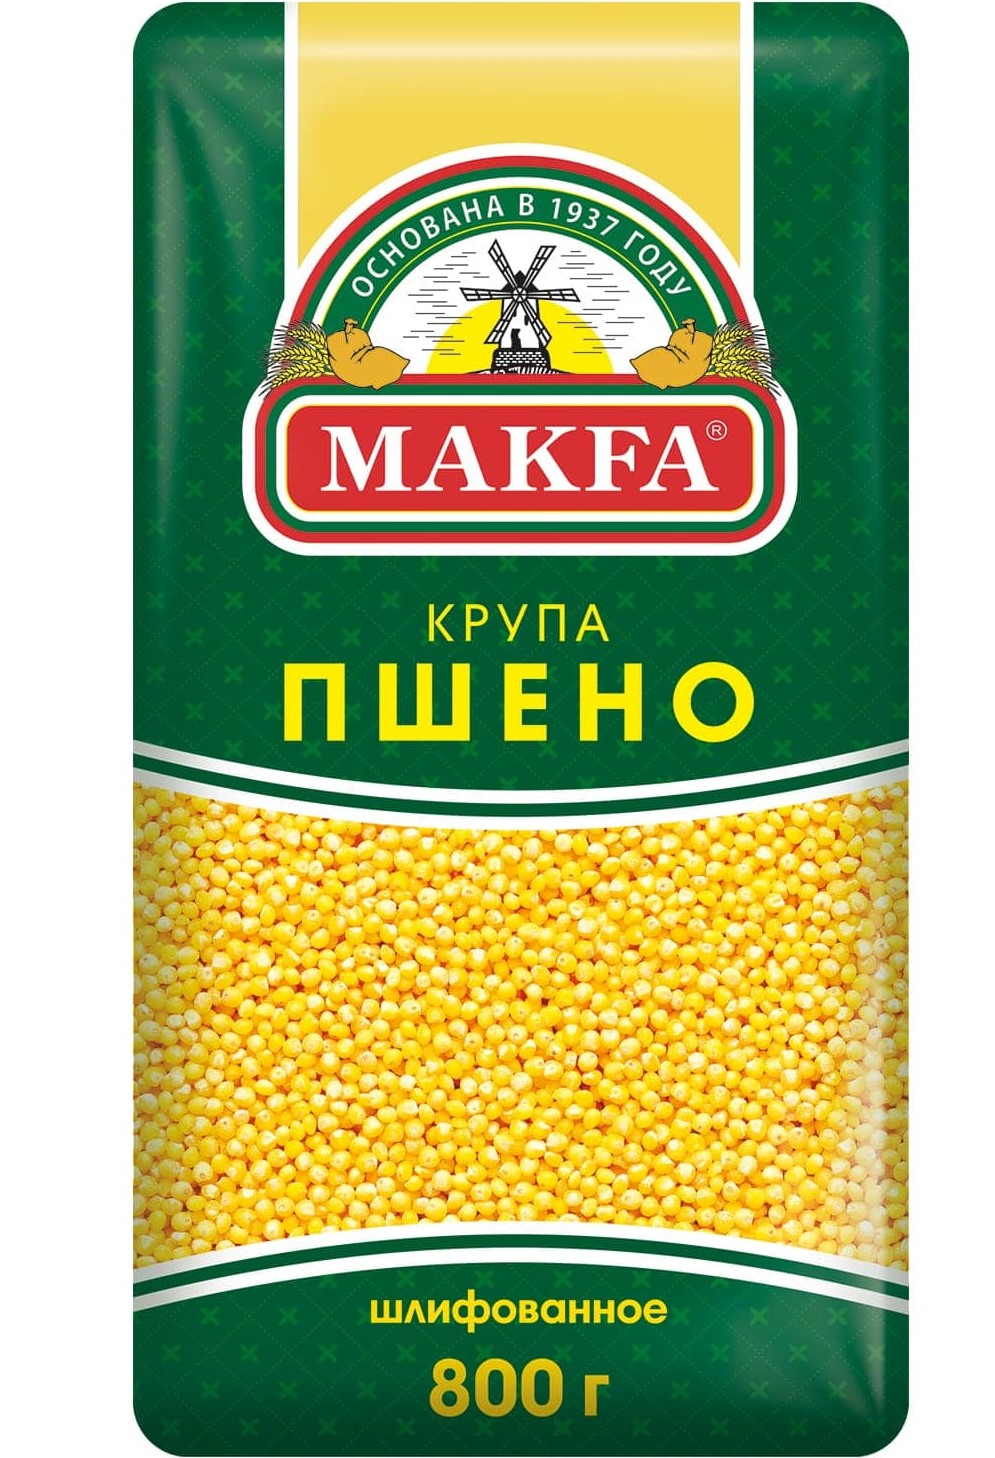 MAKFA, Пшено шлифованное, 800 гр